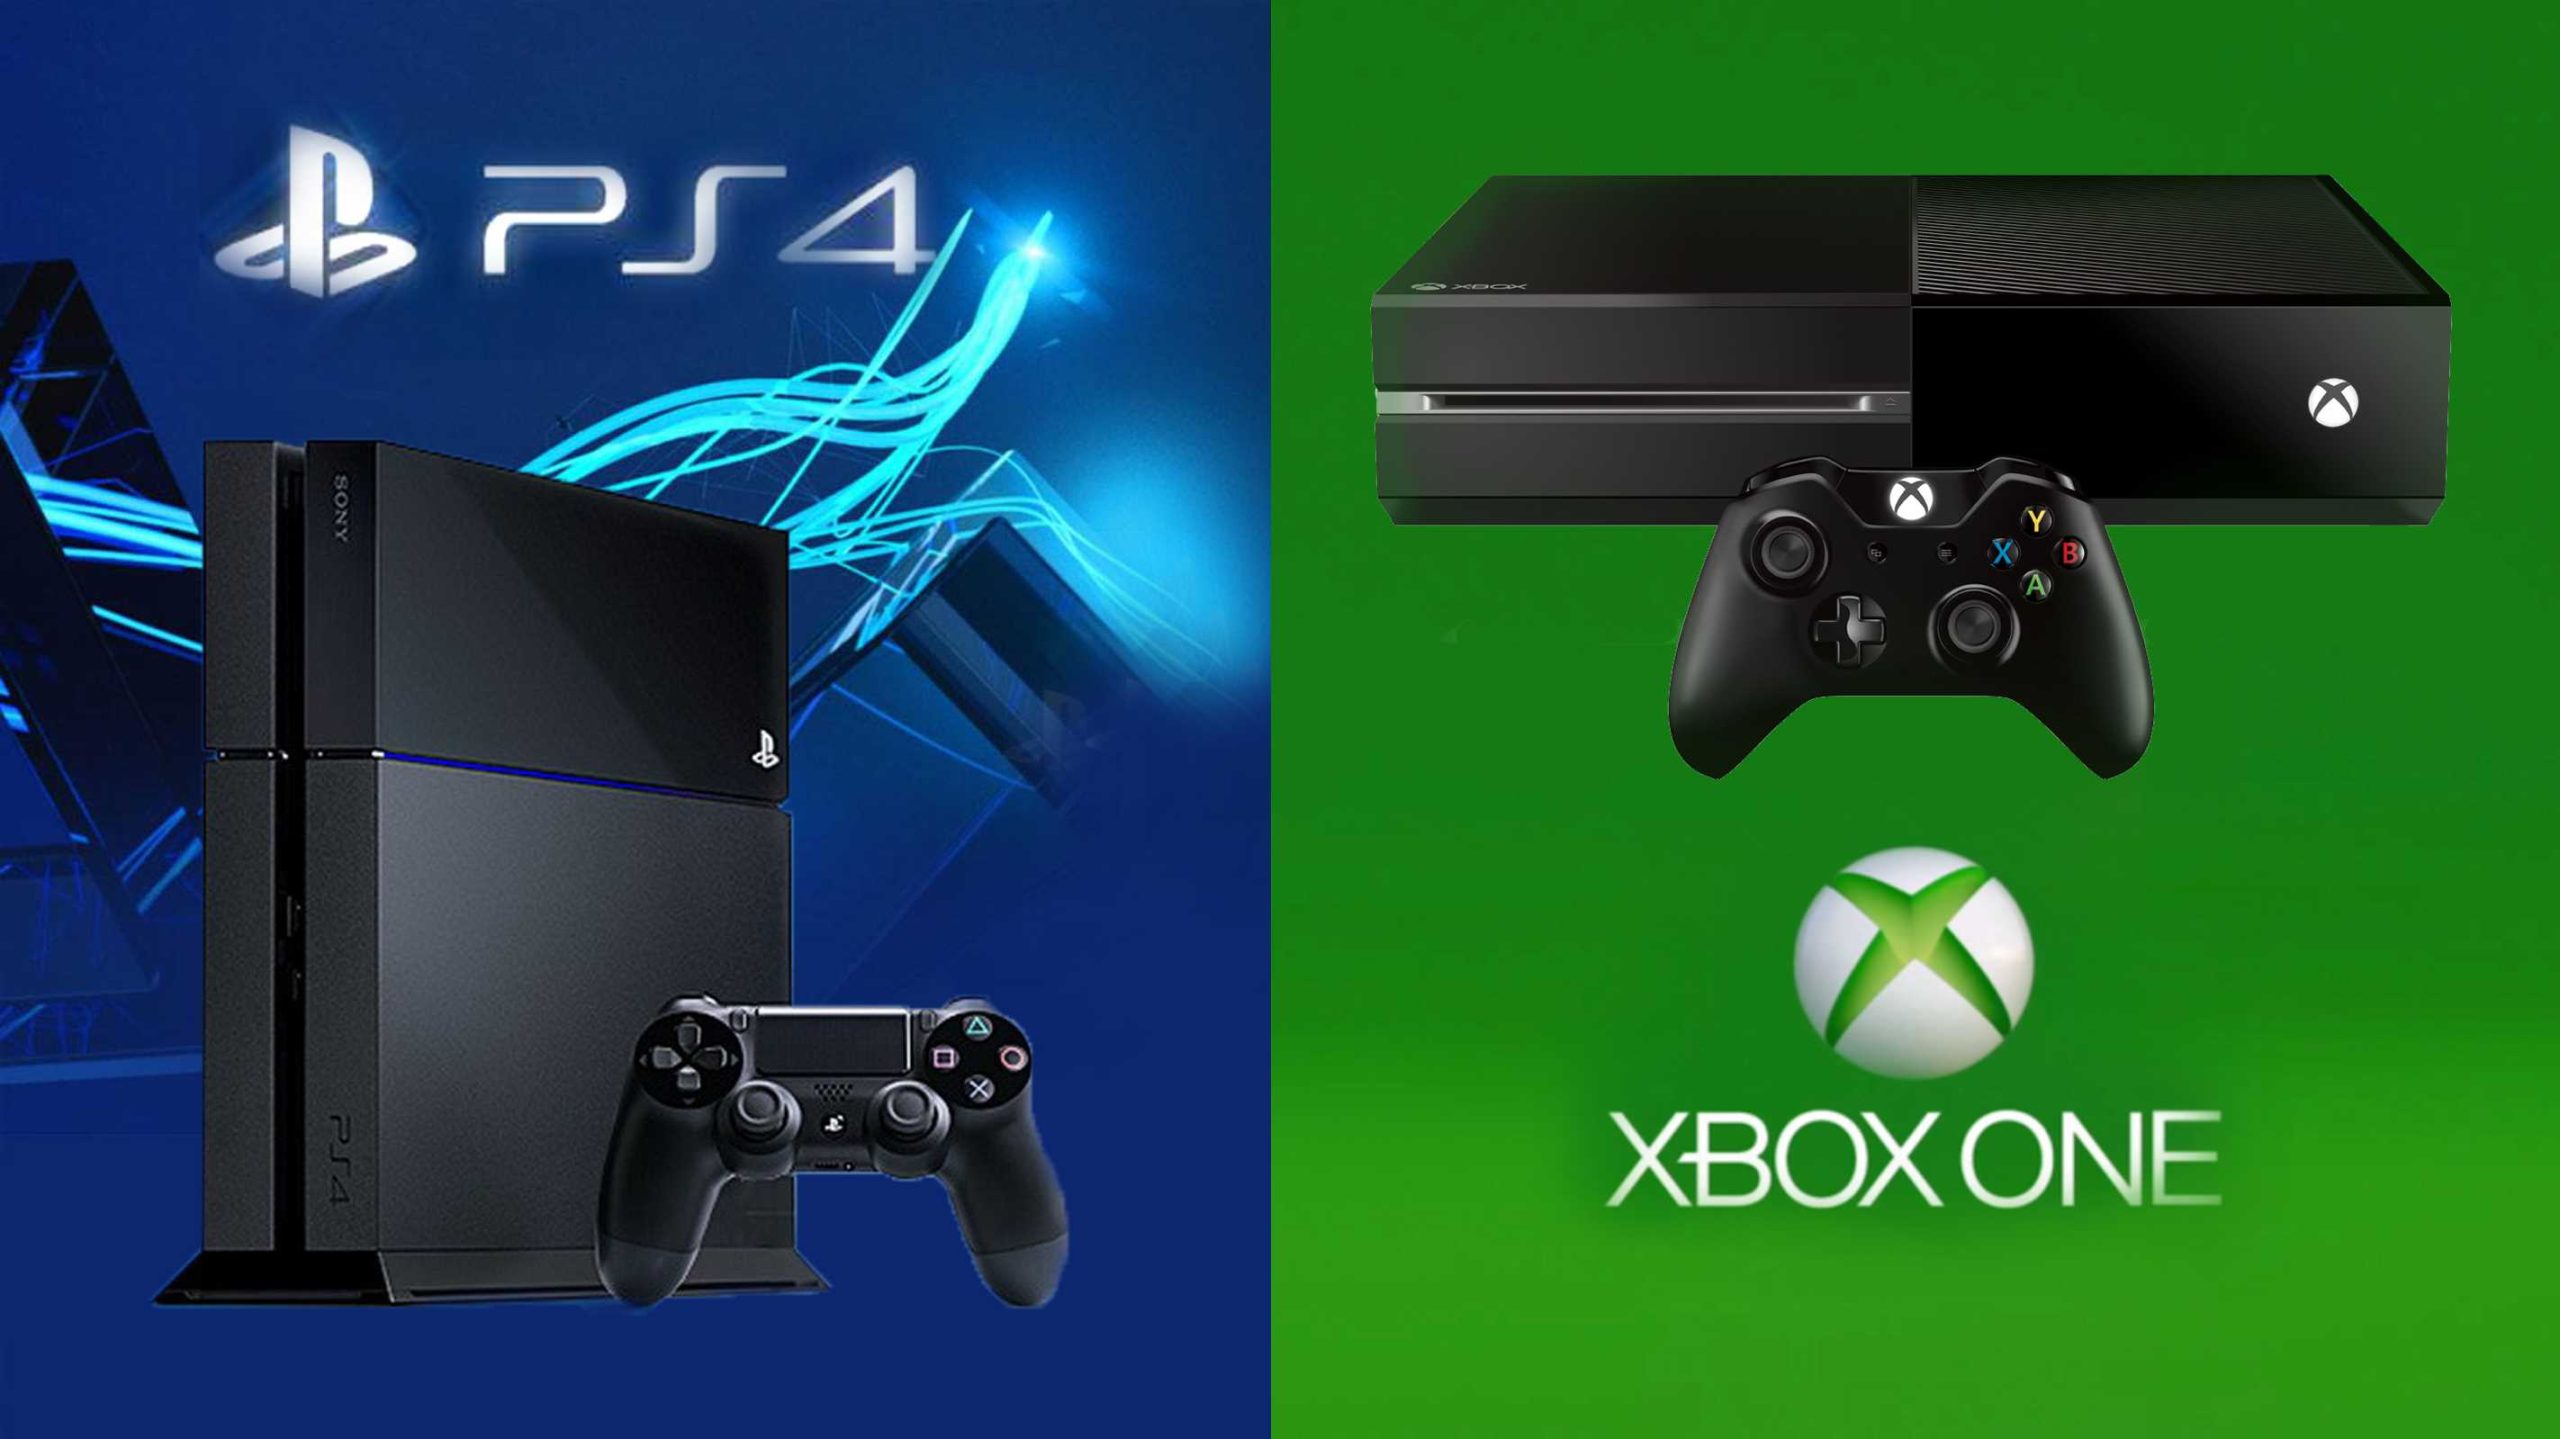 PlayStation 4 vs Xbox One, PlayStation 4 vs Xbox One which one is better, PlayStation 4 vs Xbox One graphics